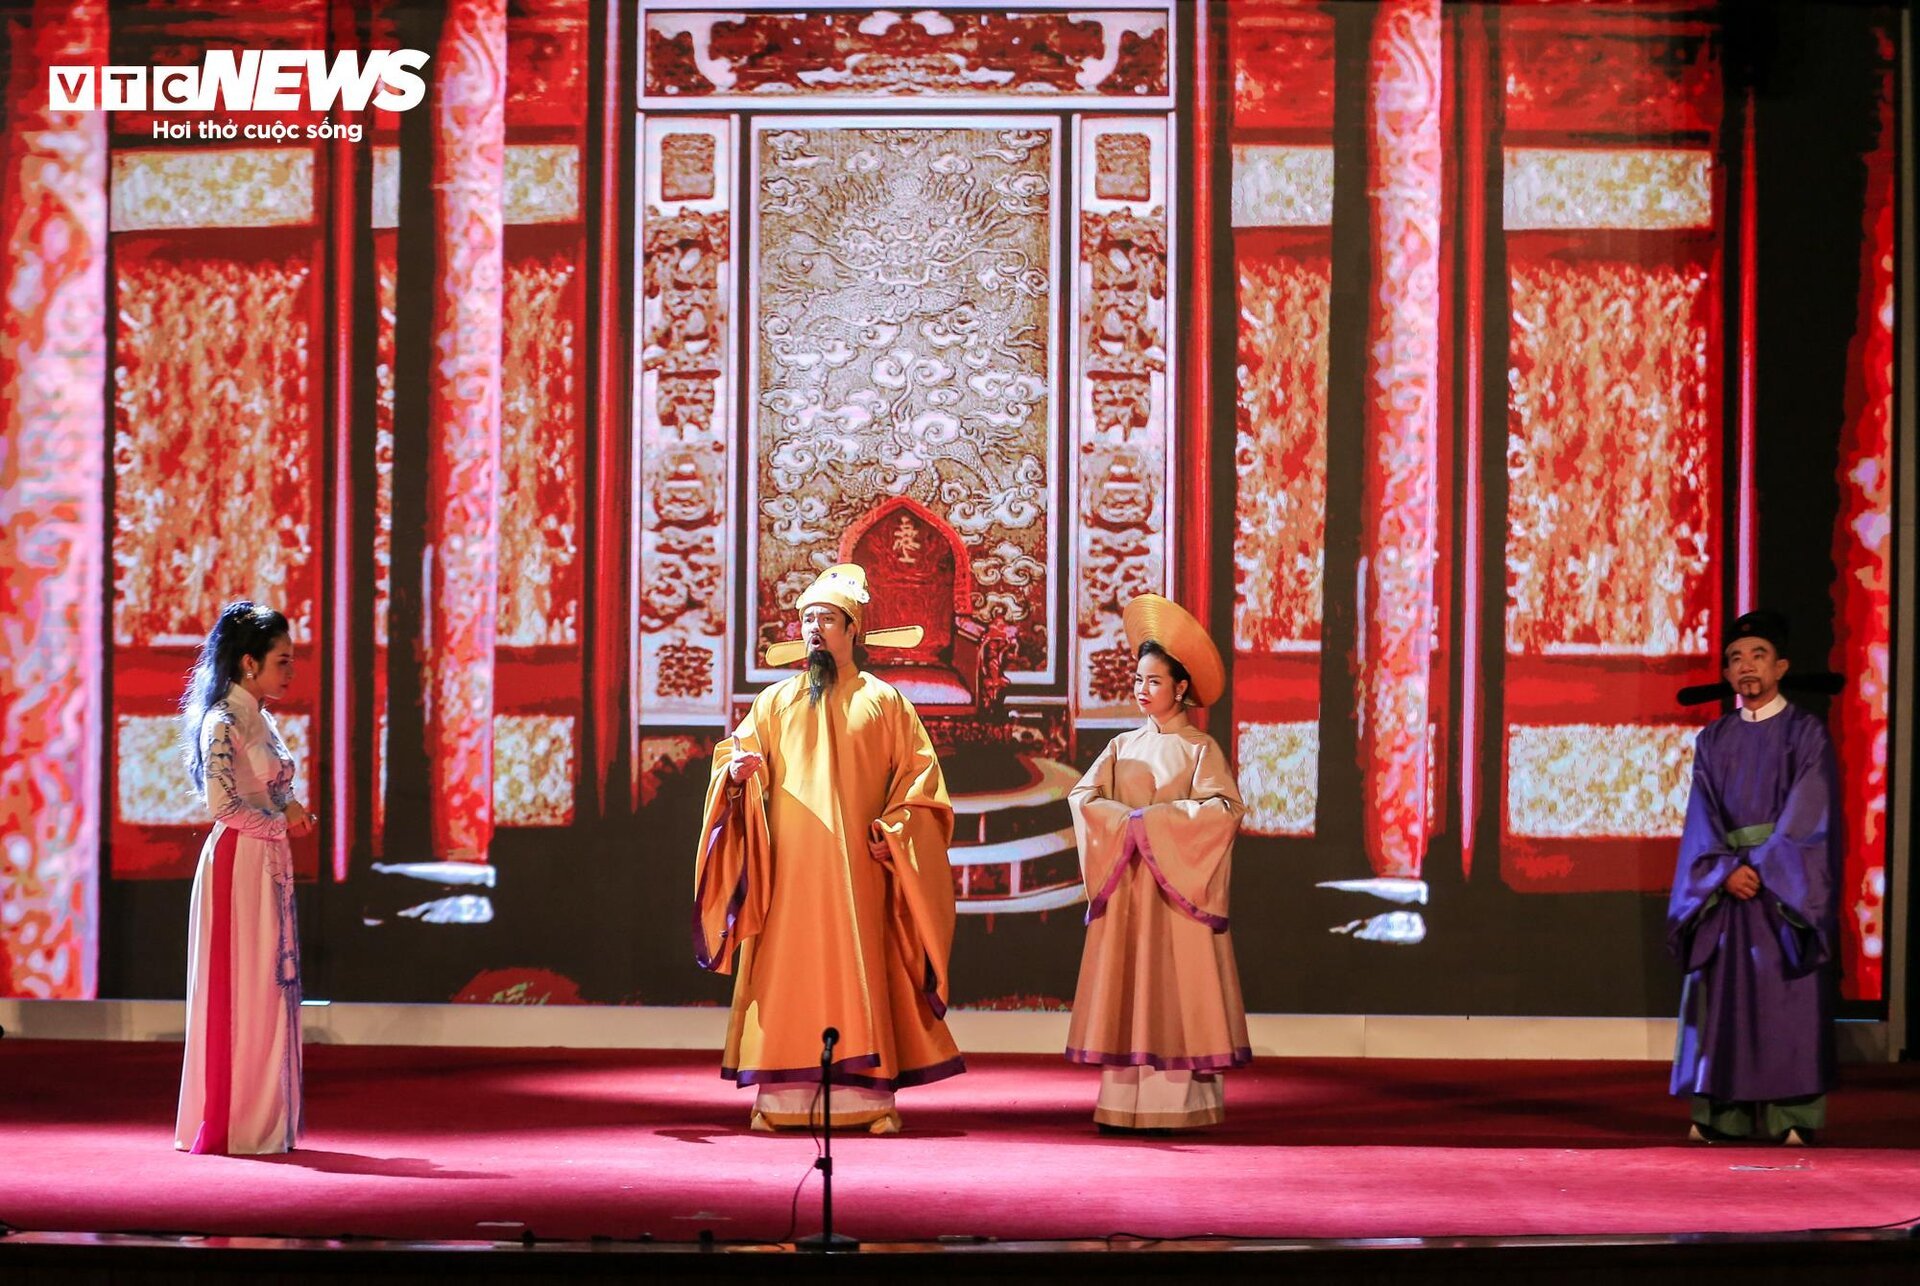 Biểu diễn vở opera kỷ niệm 50 năm quan hệ ngoại giao Việt Nam - Nhật Bản - 15